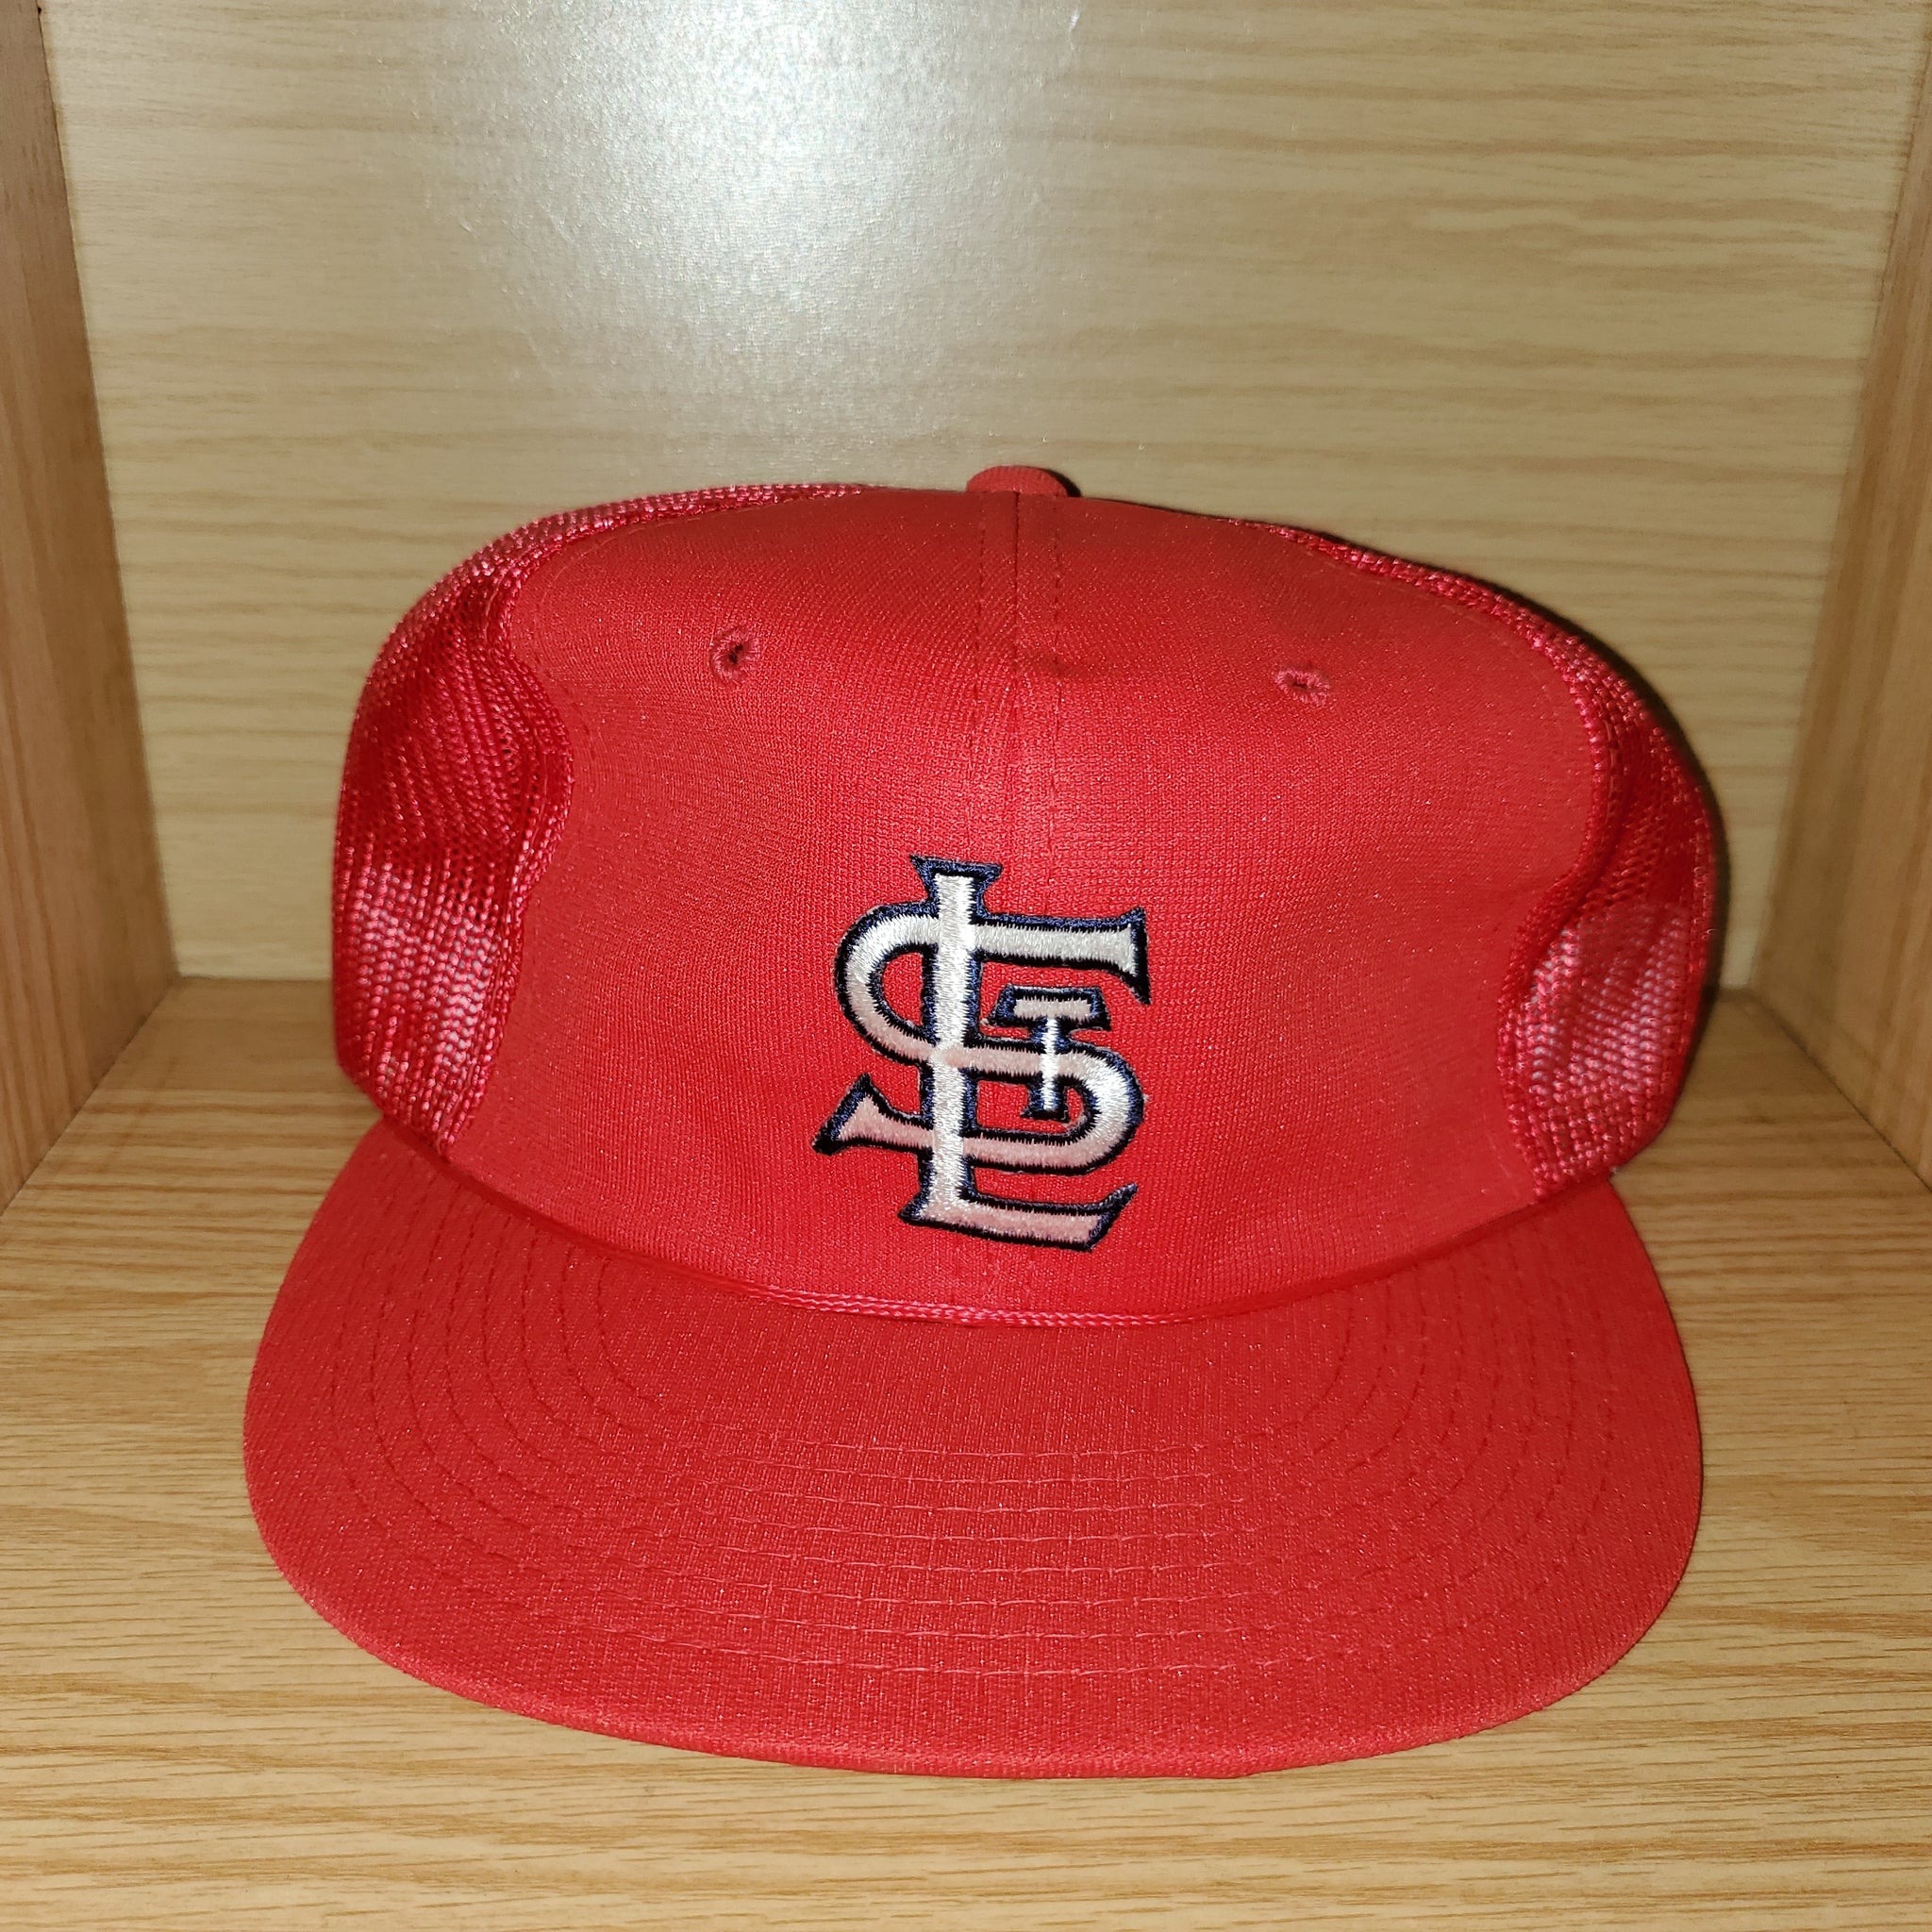 St. Louis Cardinals Vintage Hat